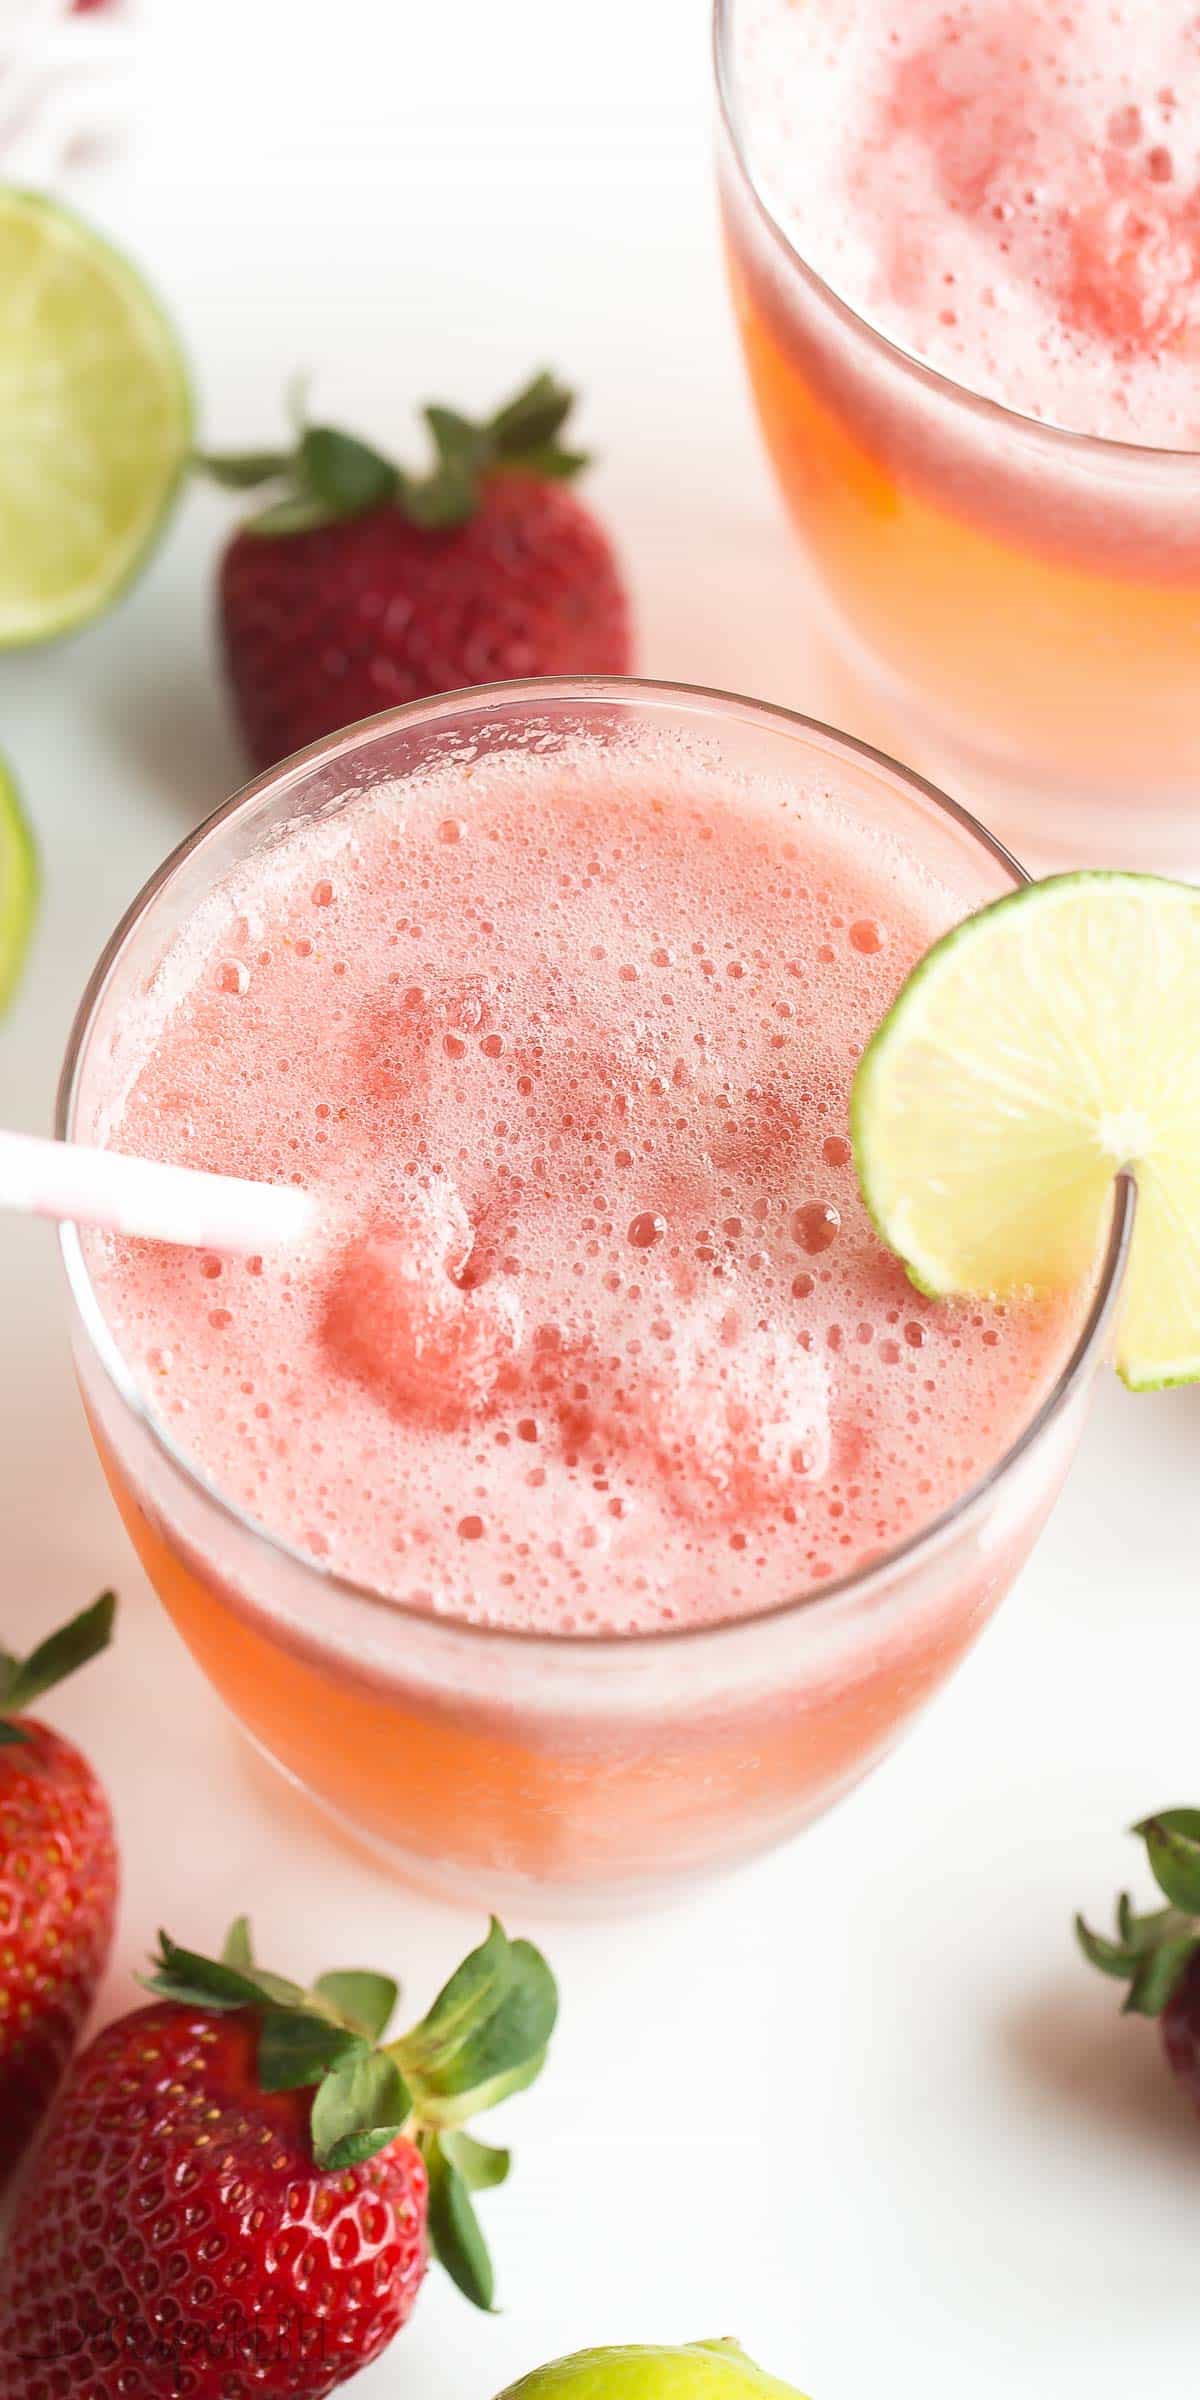 ¡Este Berry Lime Slush es una bebida fría y helada de verano que mantendrá calmada tu sed! ¡Es ideal para guardar en el congelador y sacar a visitantes sorpresa, picnics y barbacoas! https://www.thereciperebel.com/berry-lime-slush-recipe/